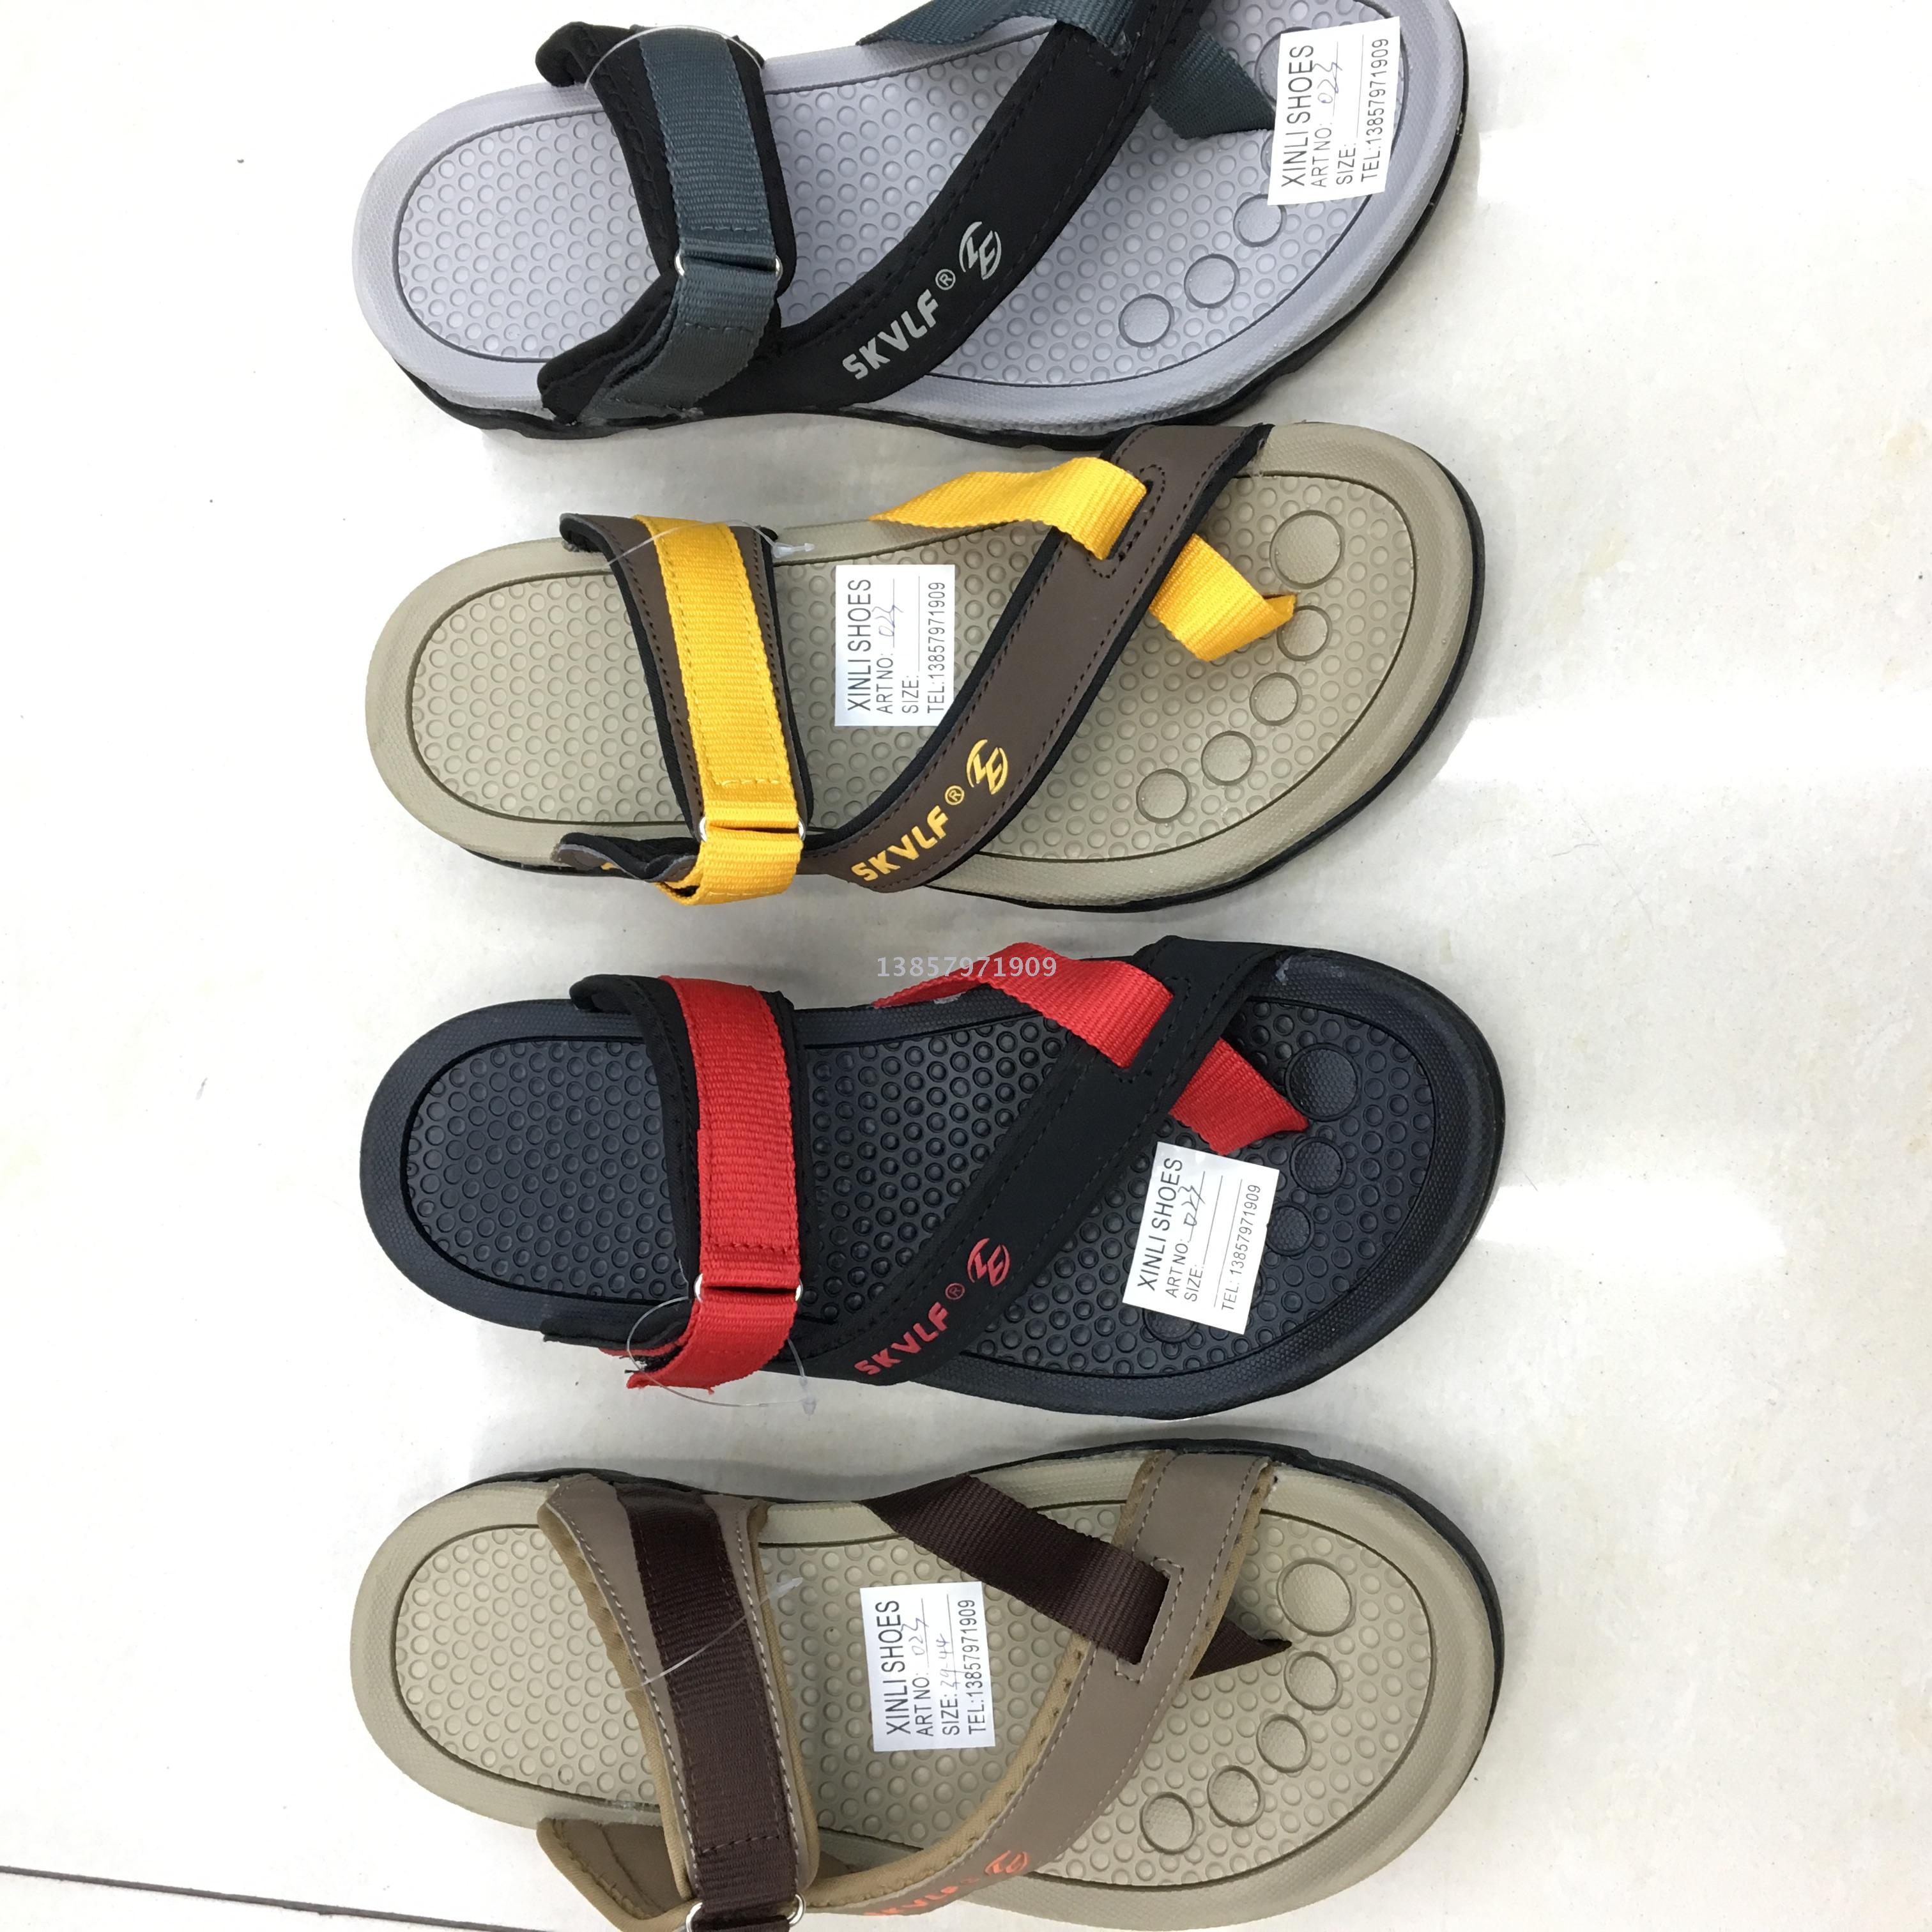 Webbing beach shoes fujian sandals 